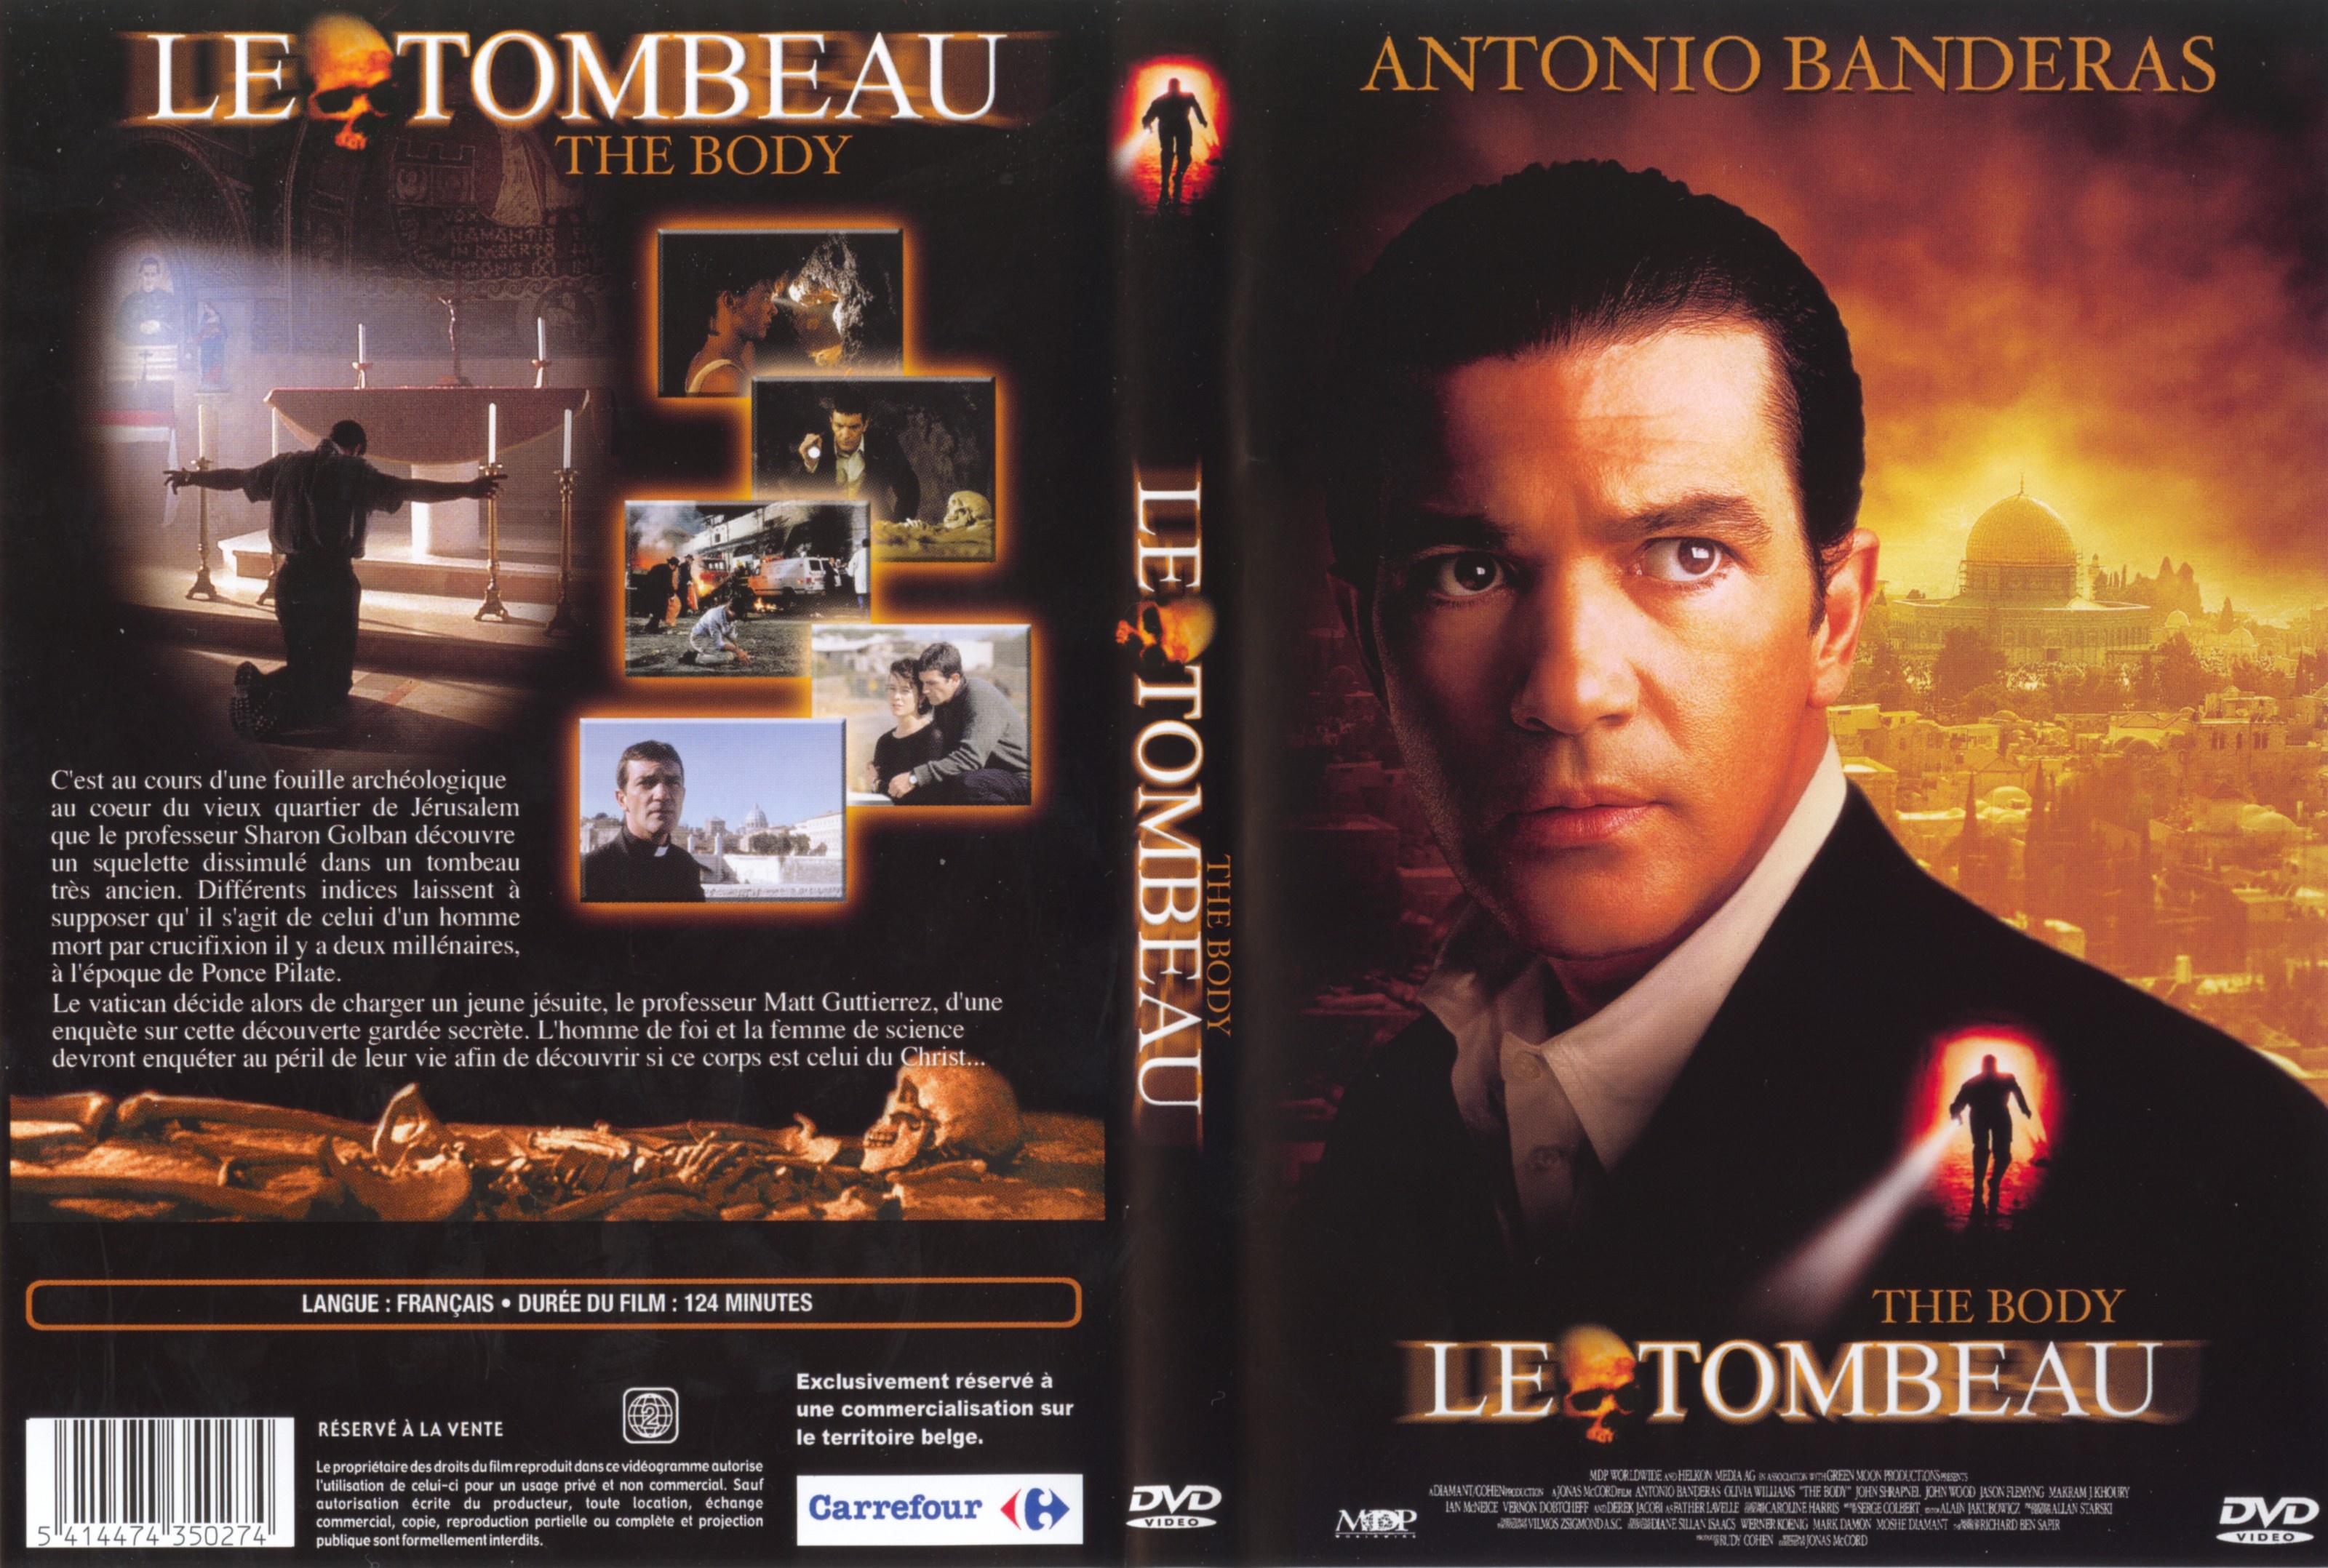 Jaquette DVD Le tombeau v2